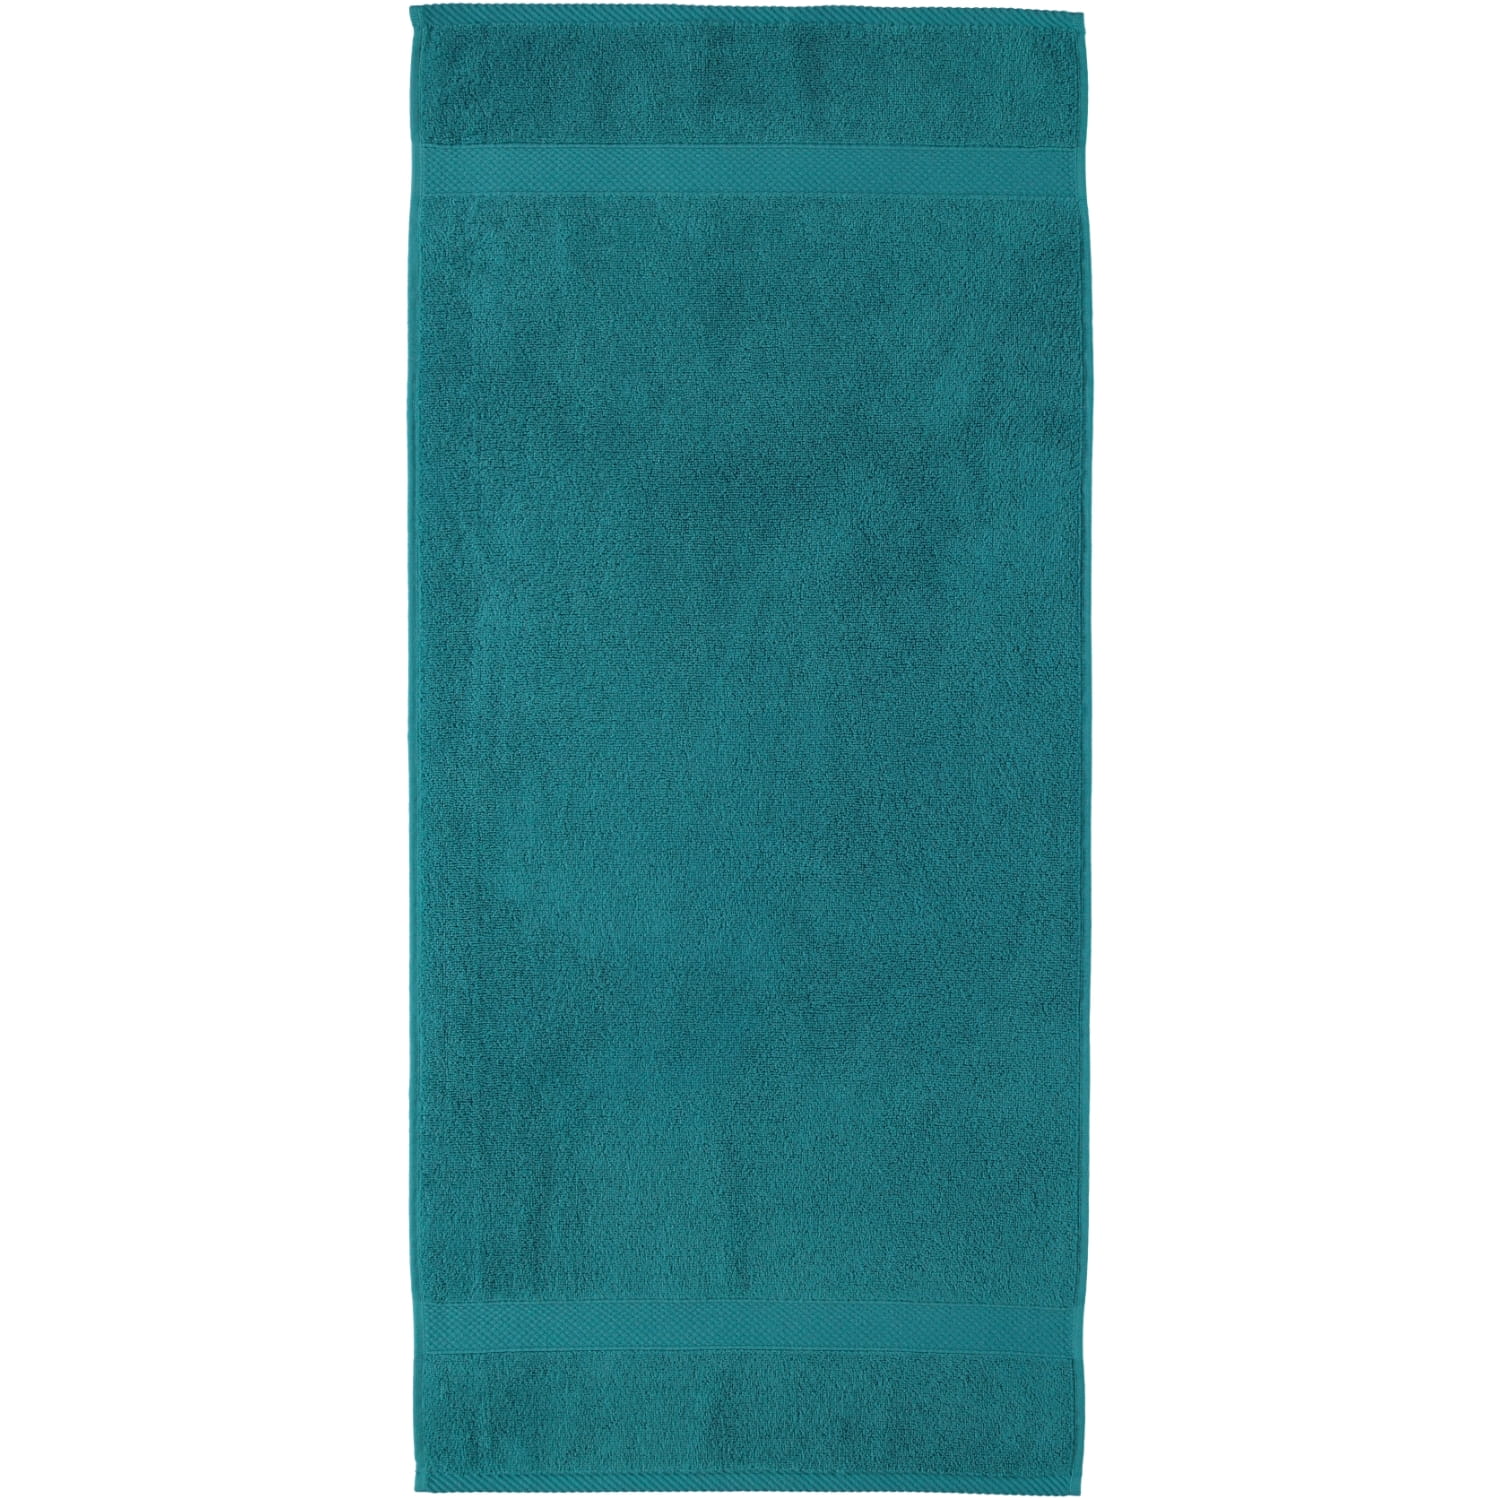 | Marken Diamant | | (02010450) turquoise dark Egeria Handtücher - Farbe: Egeria - Egeria 464